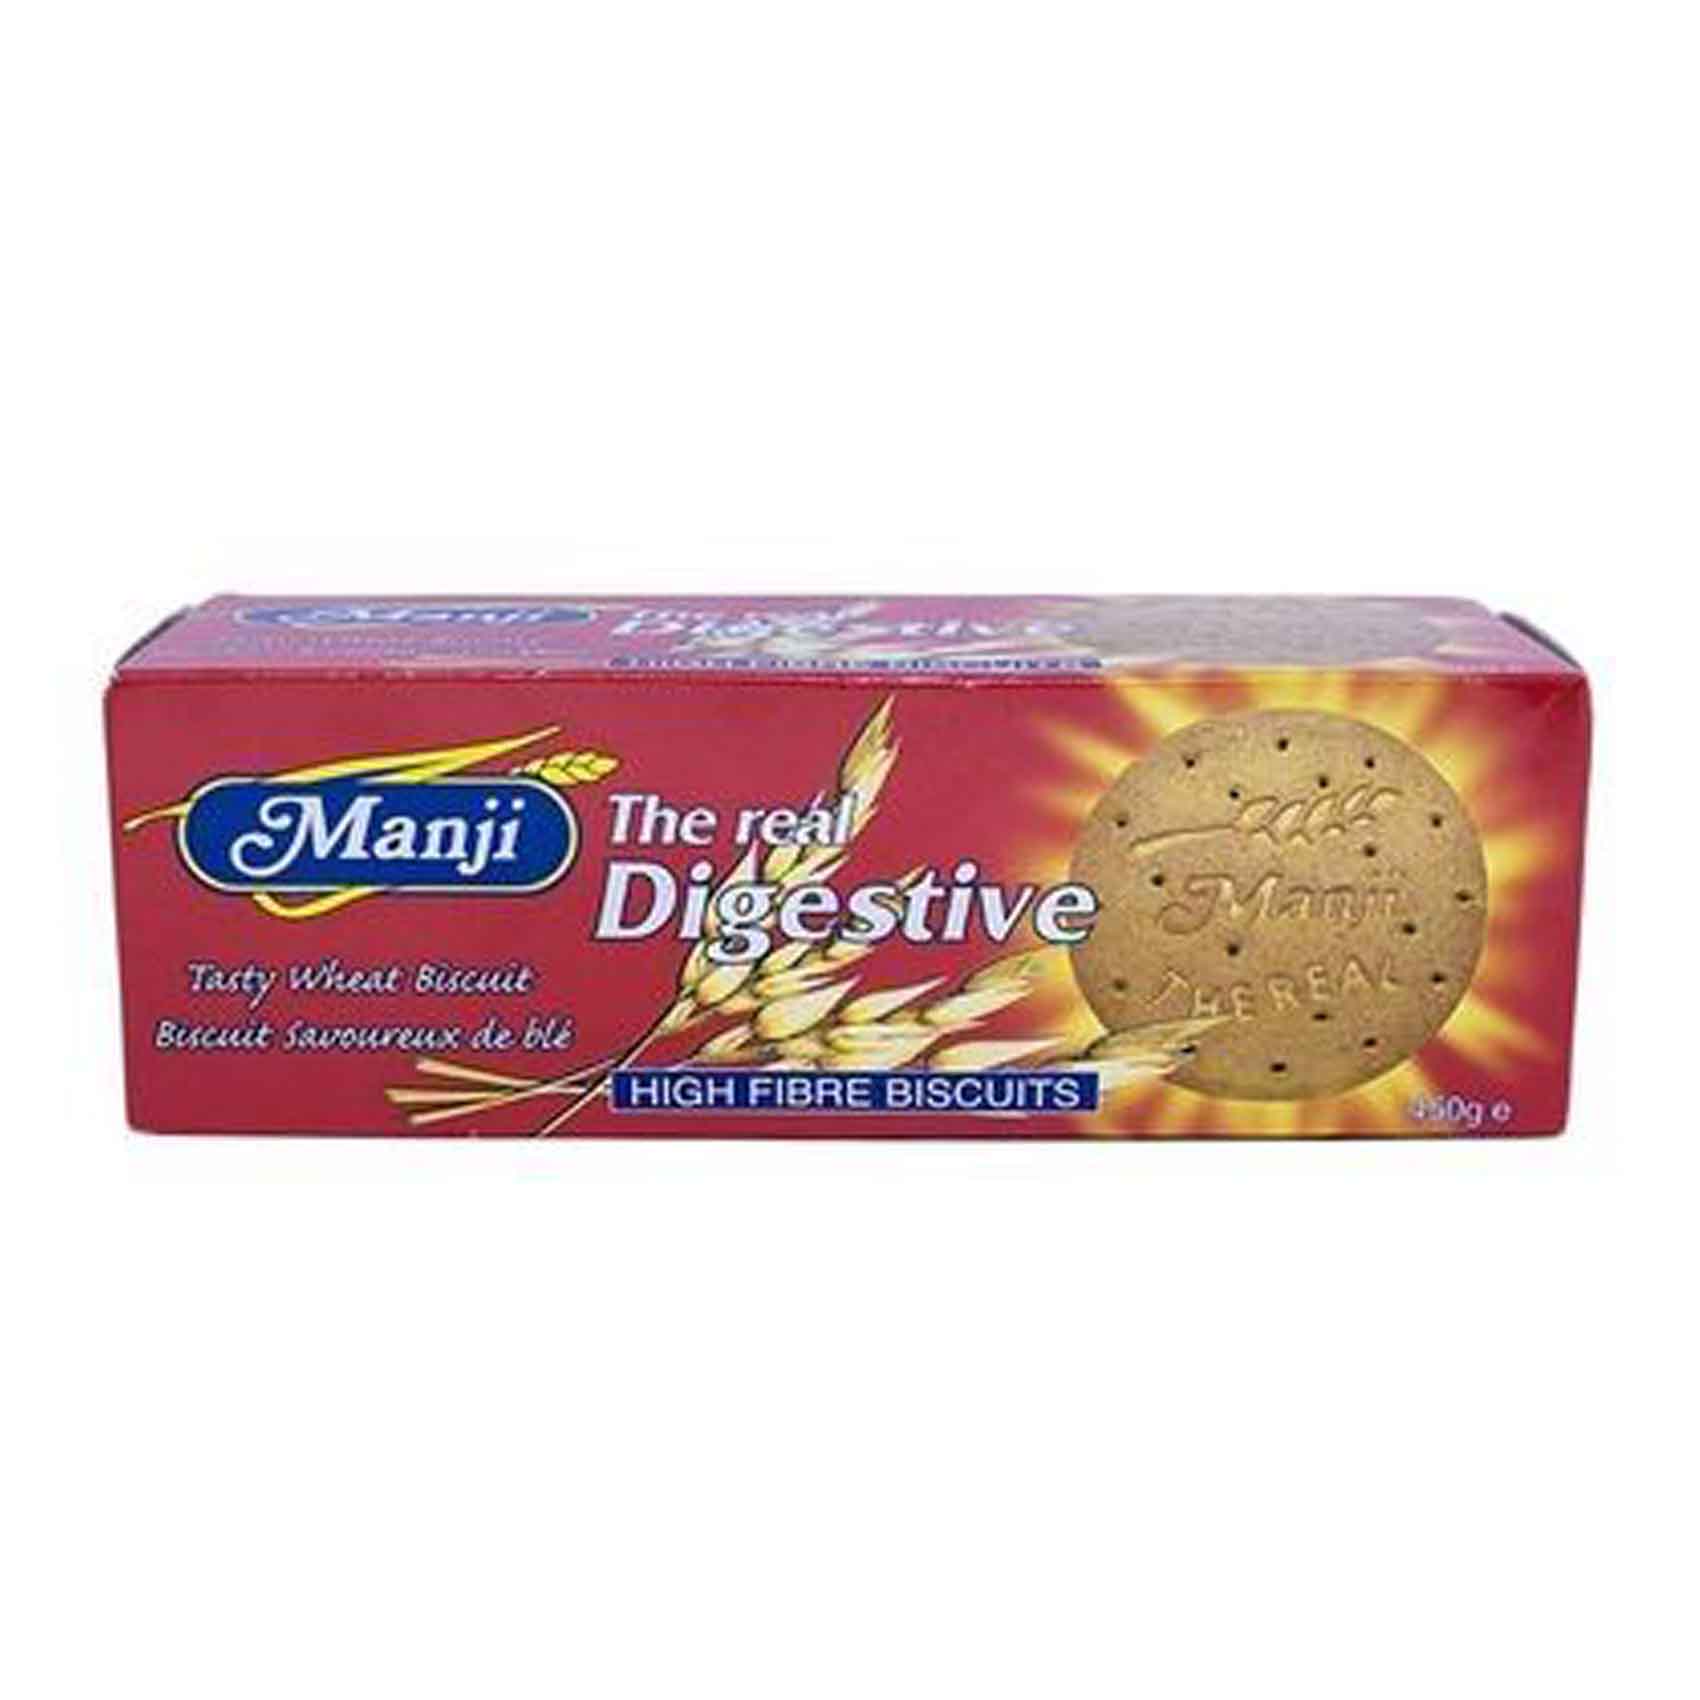 Manji Digestive Biscuit 450g